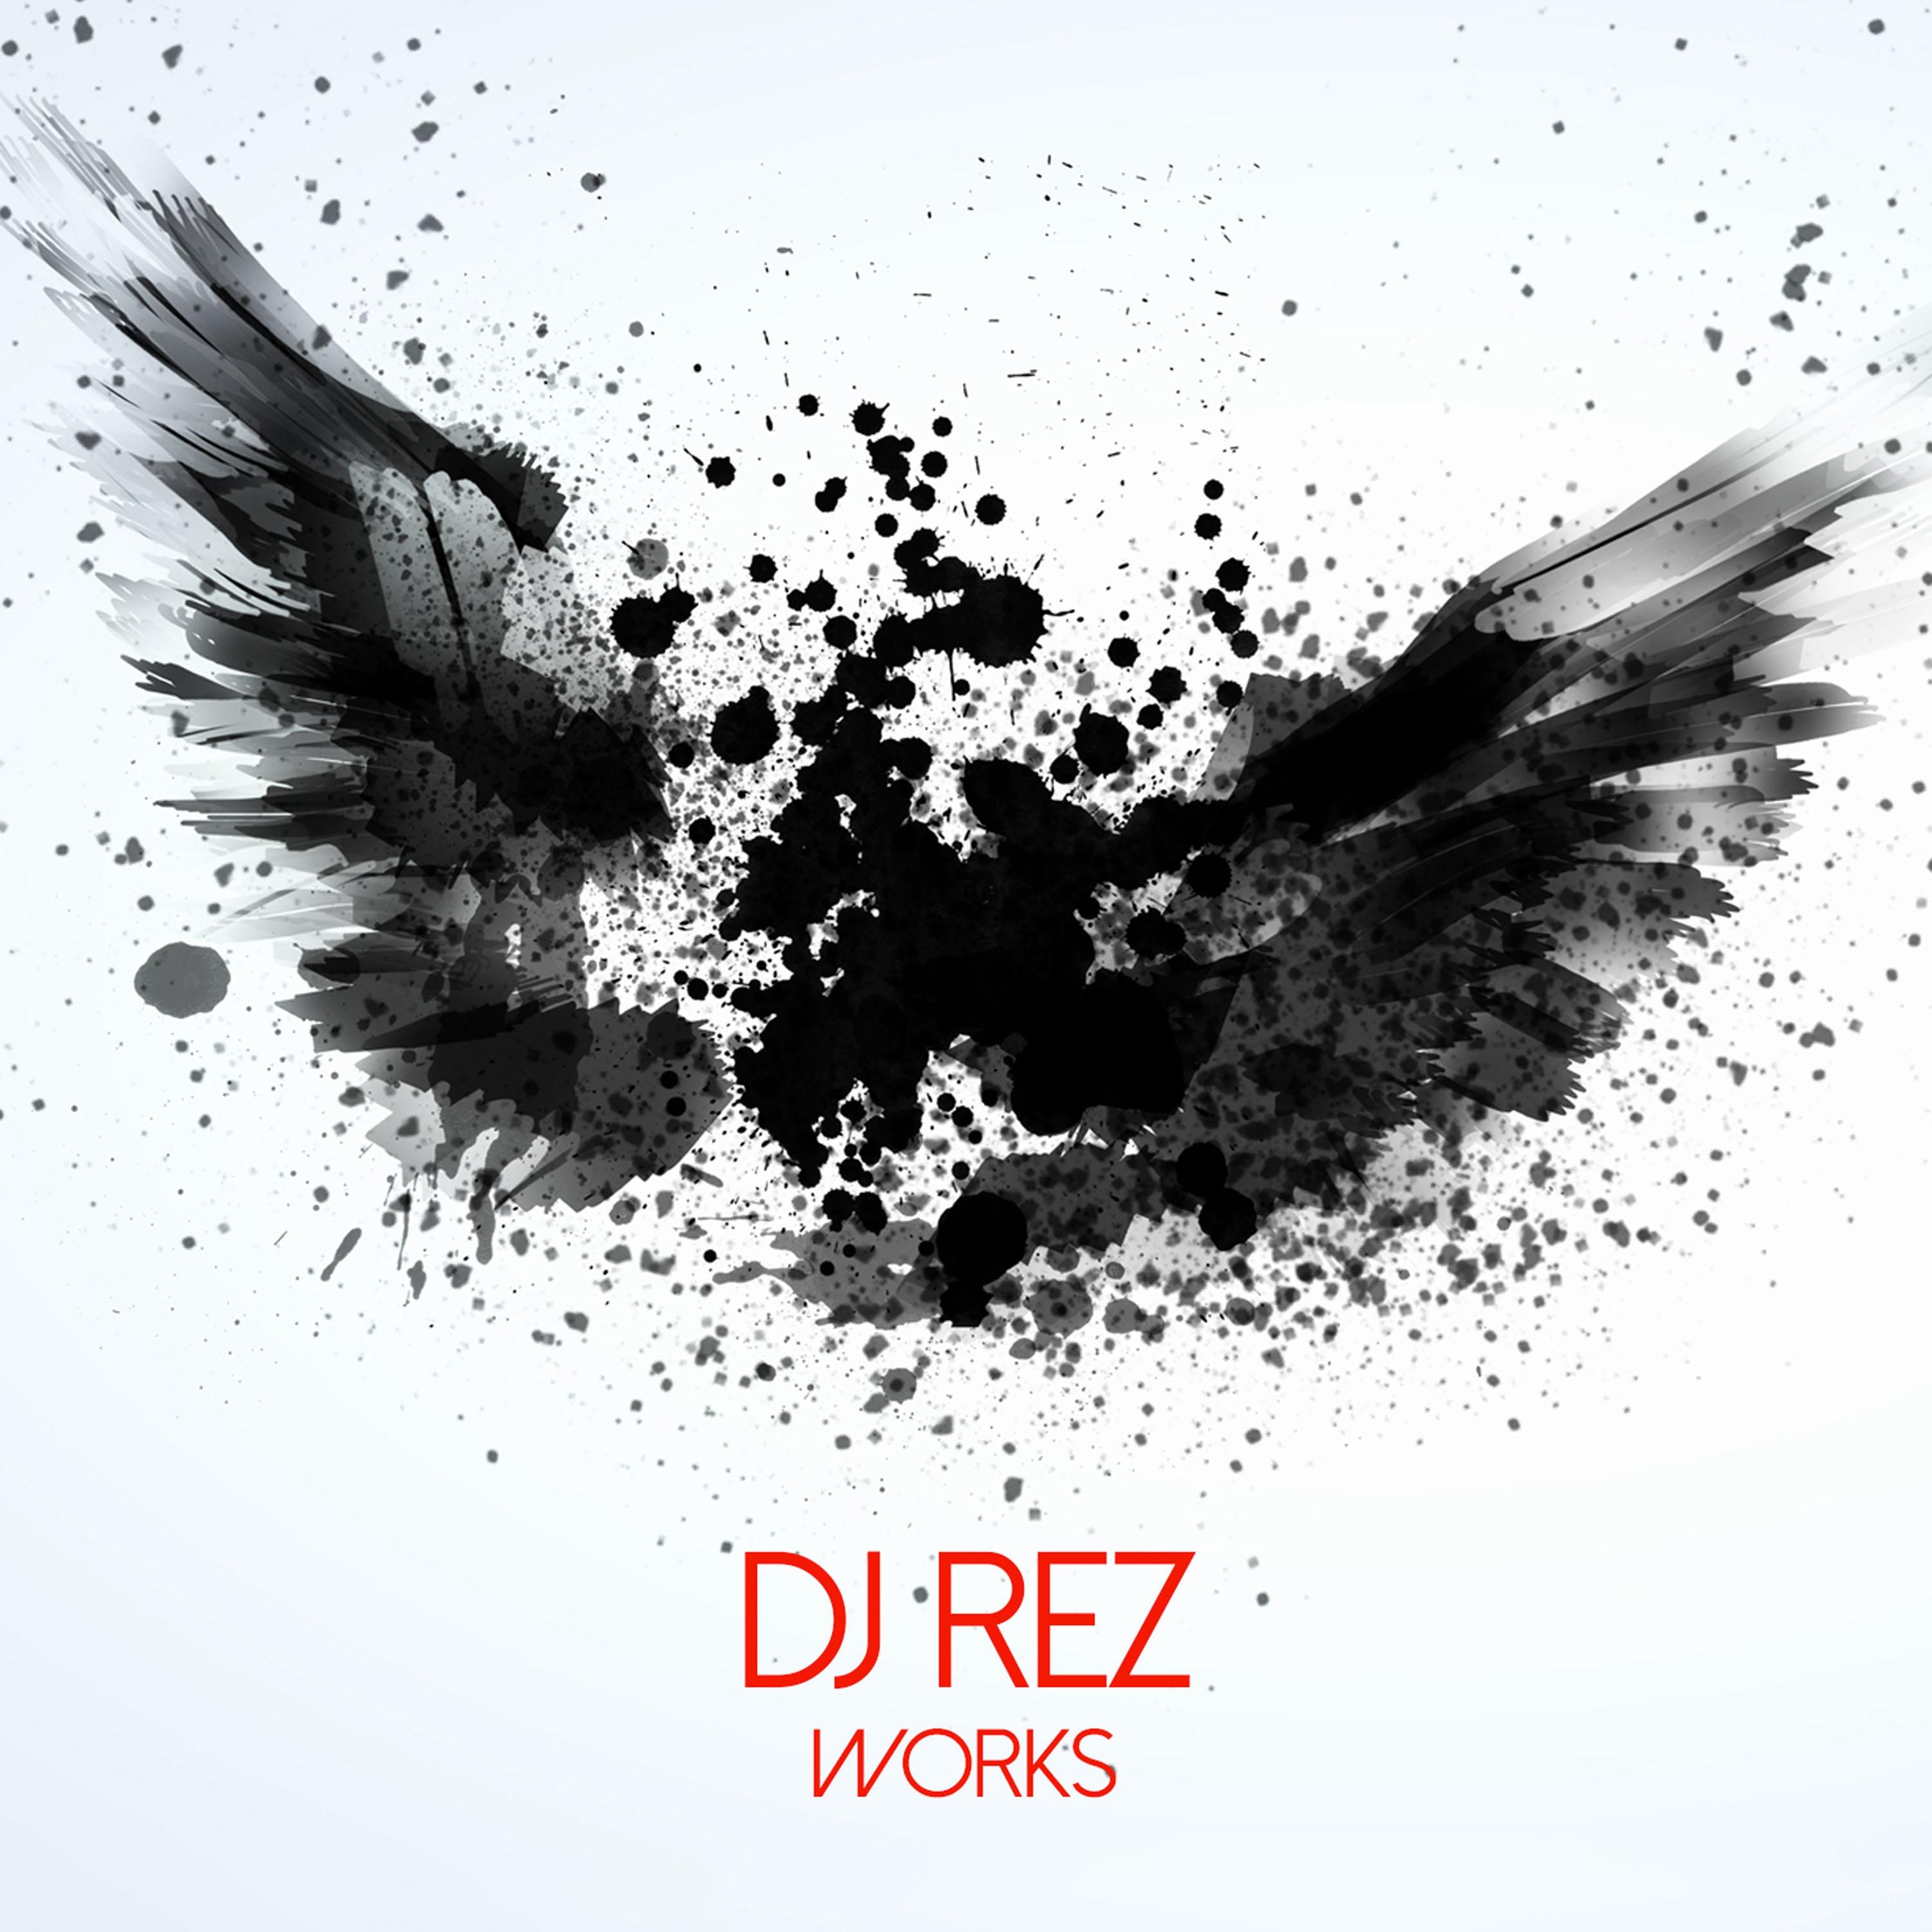 Dj Rez - It's the 1 2 Flow (Original Mix)